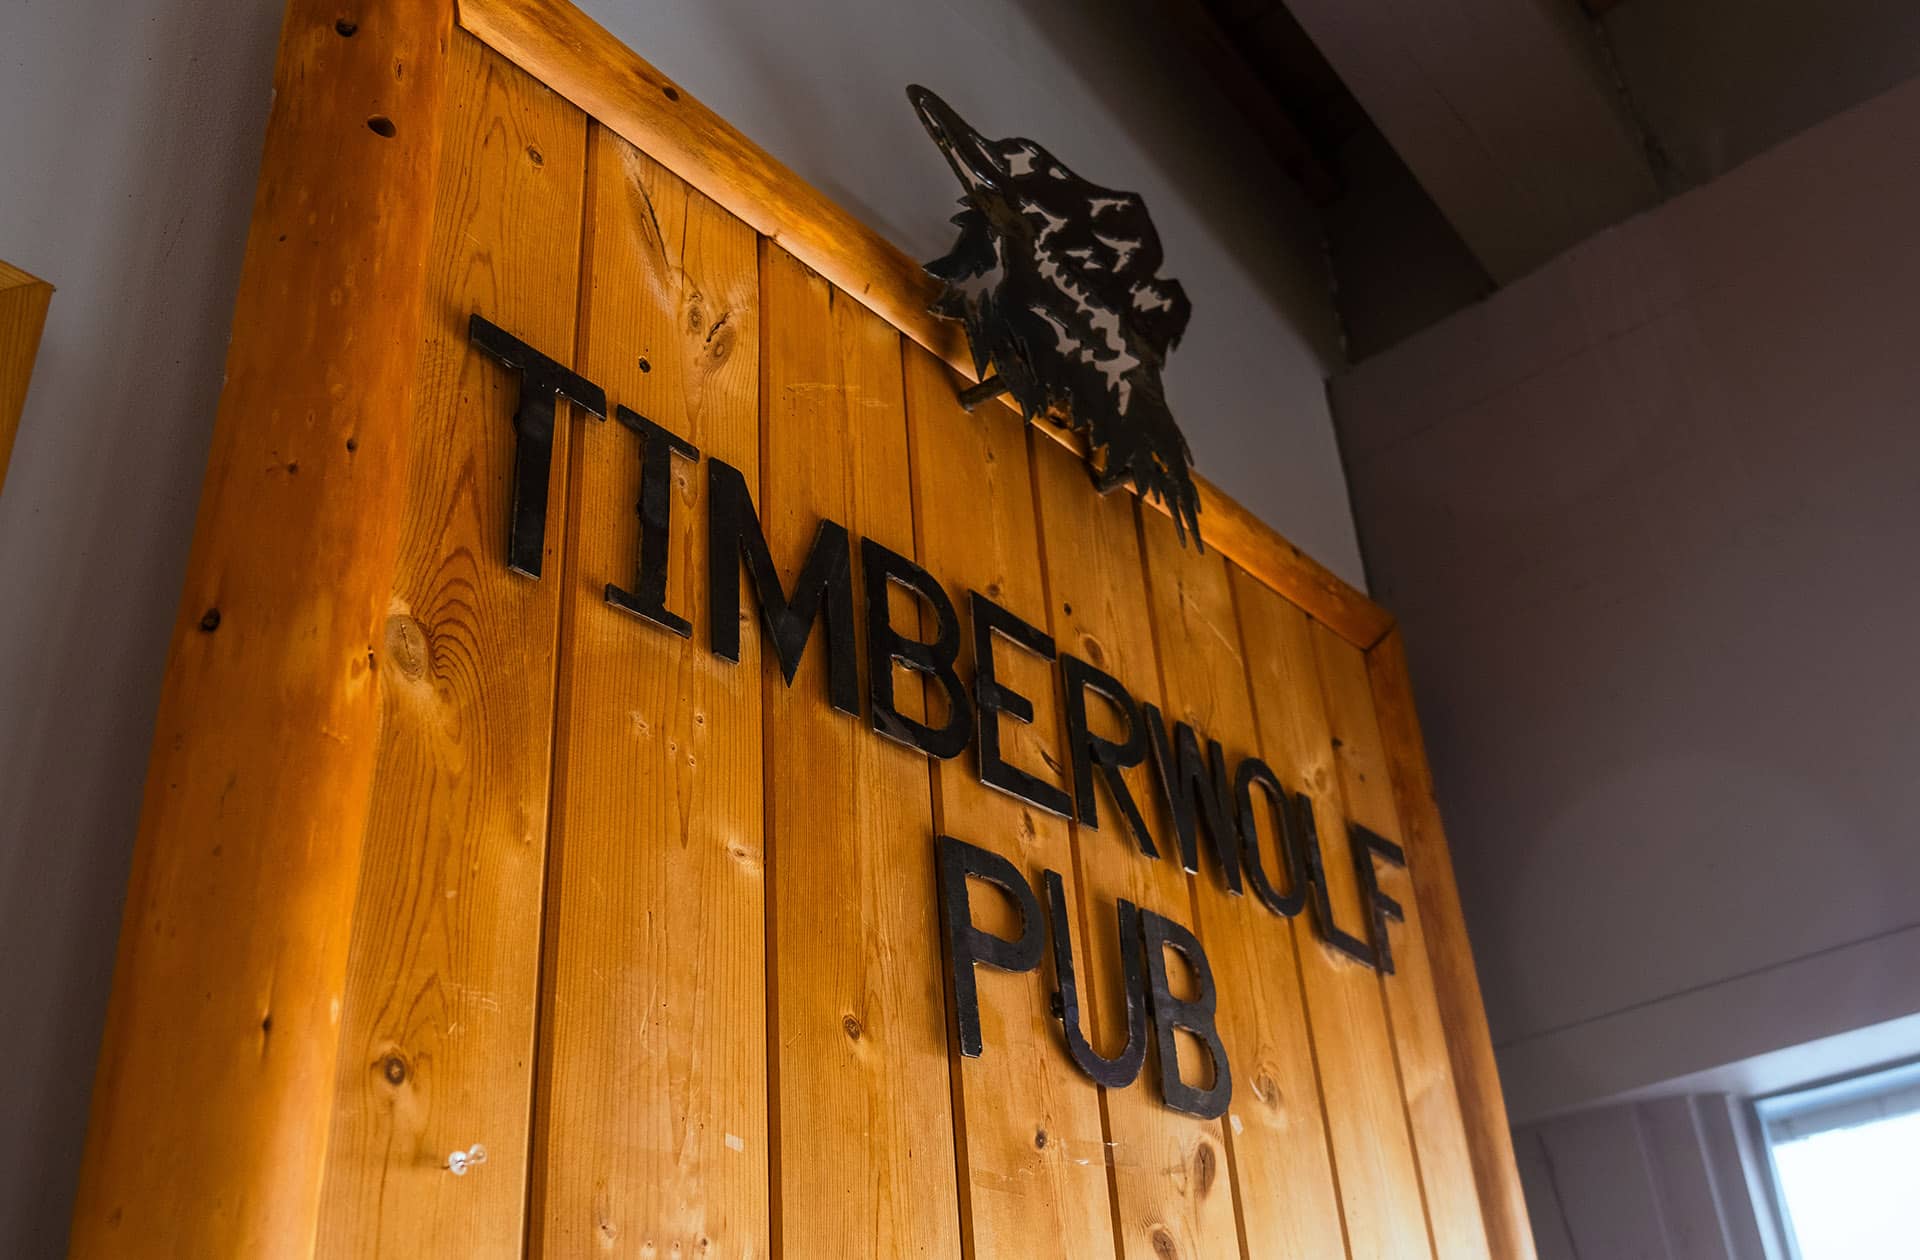 Timberwolf Pub